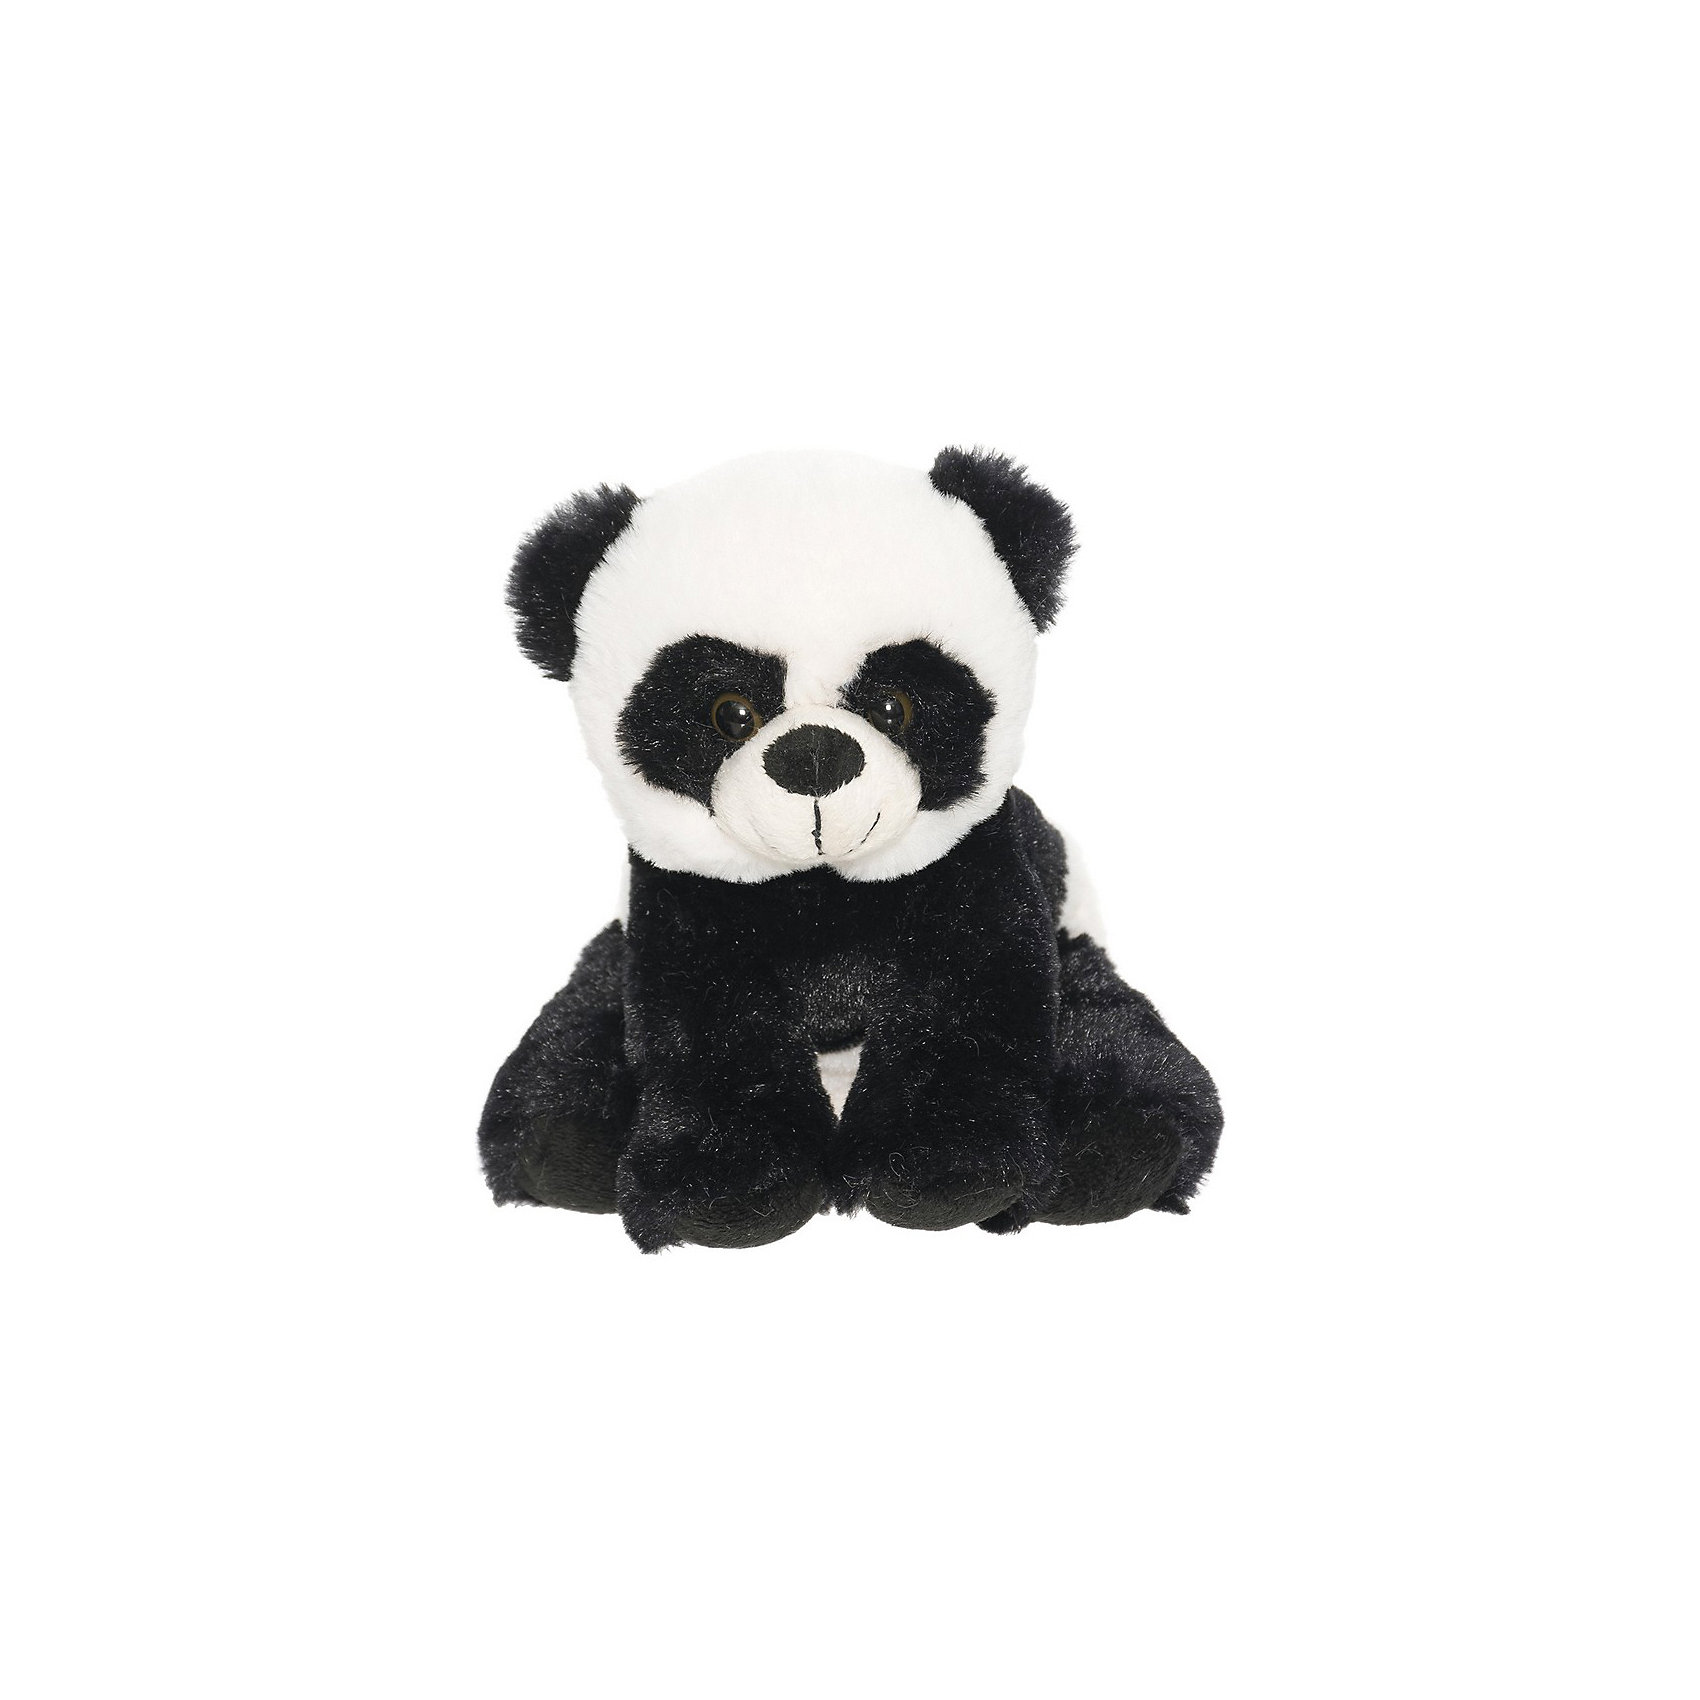 фото Мягкая игрушка teddykompaniet панда, 20 см